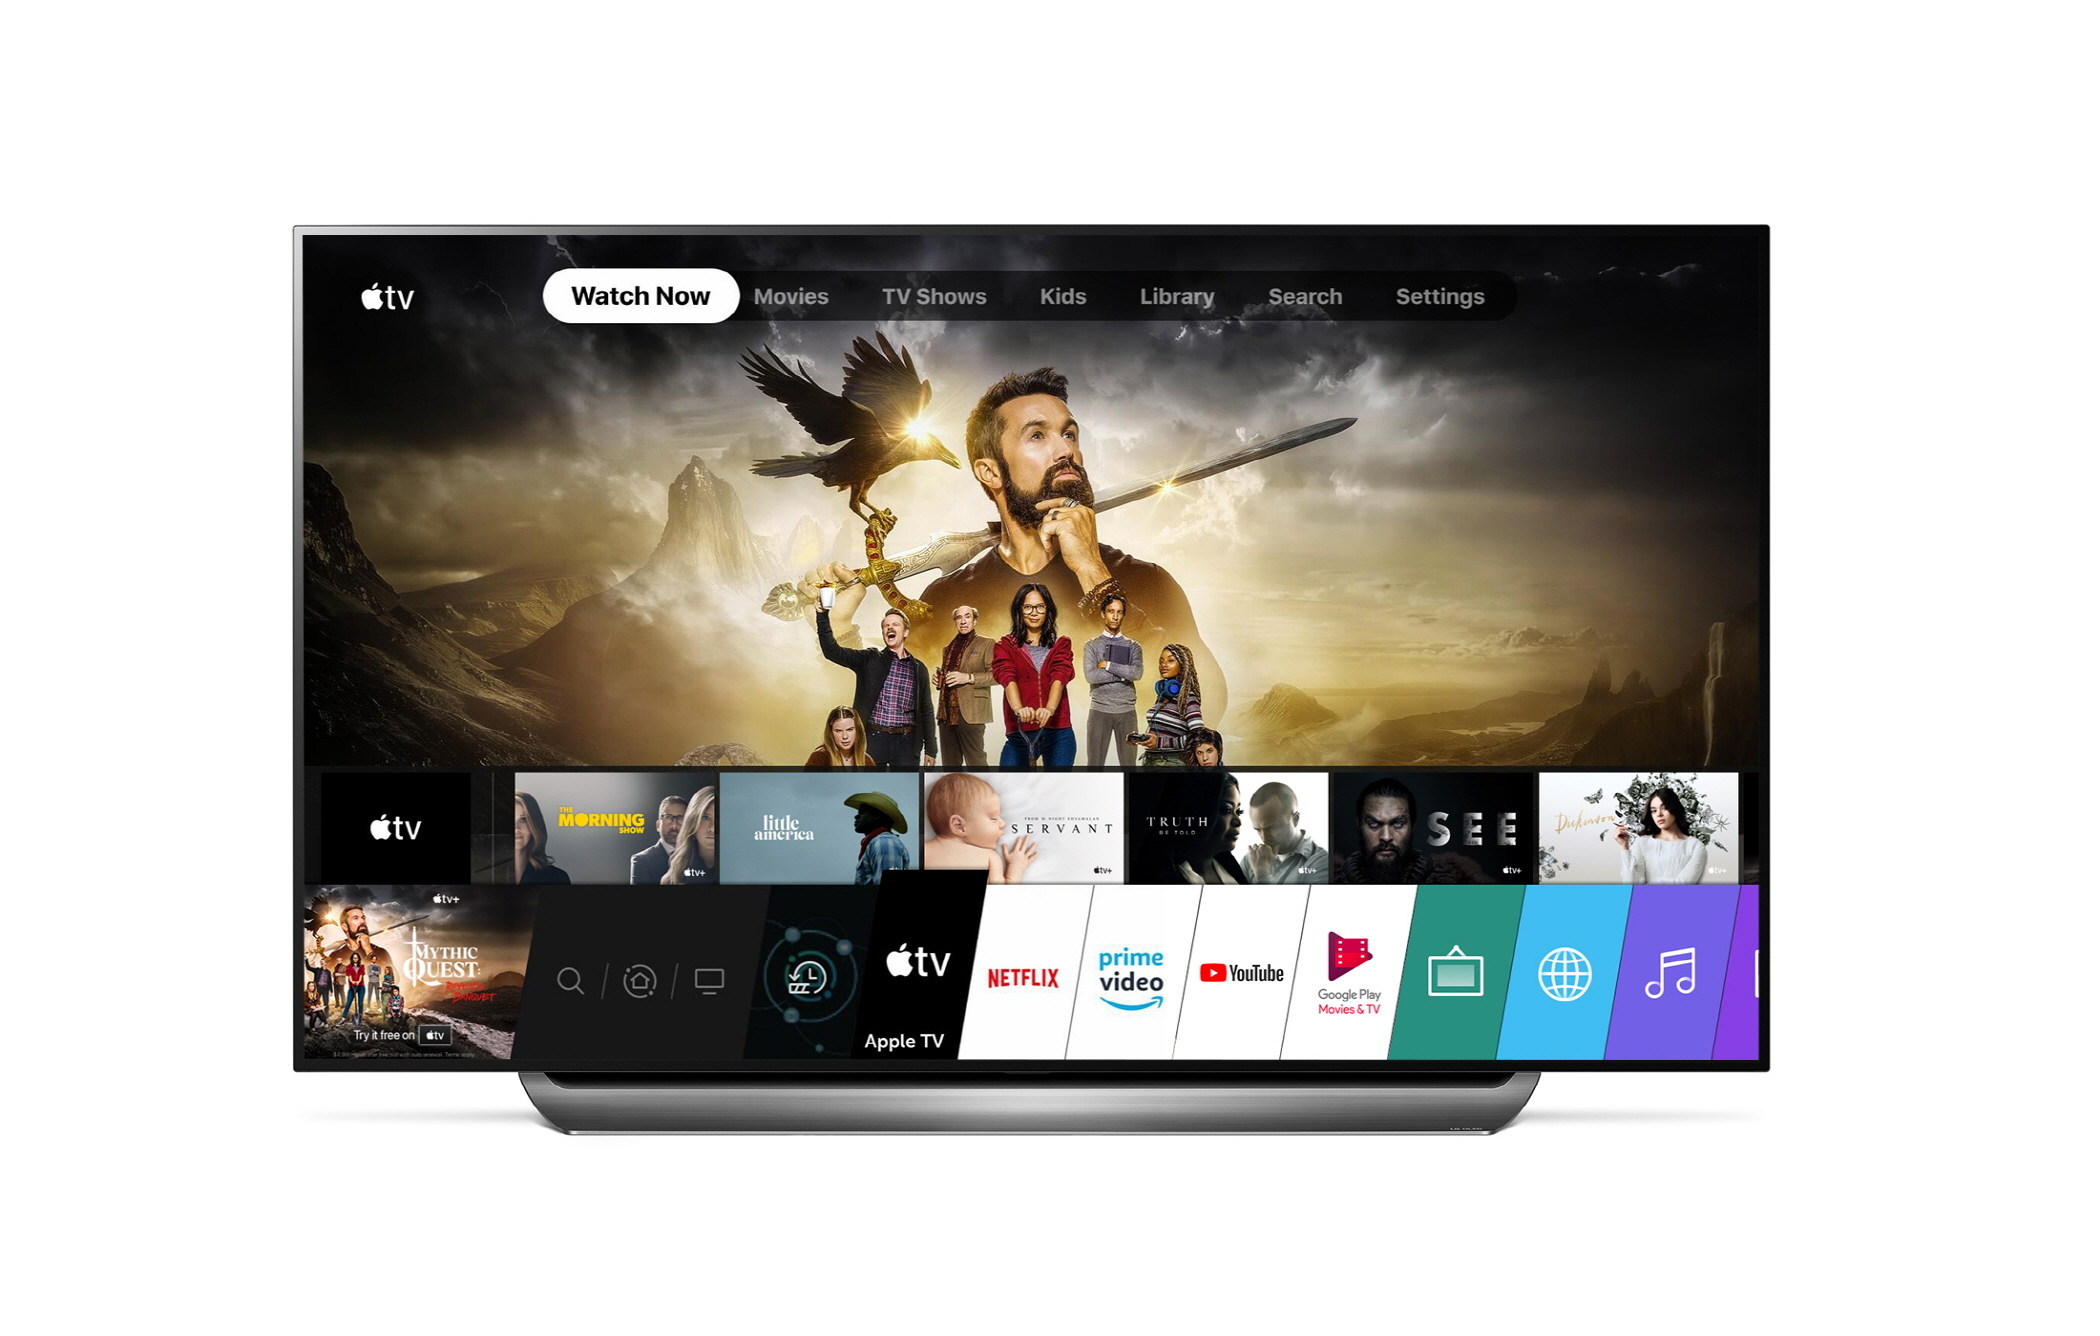 La aplicación Apple TV ahora está disponible en televisores LG antiguos